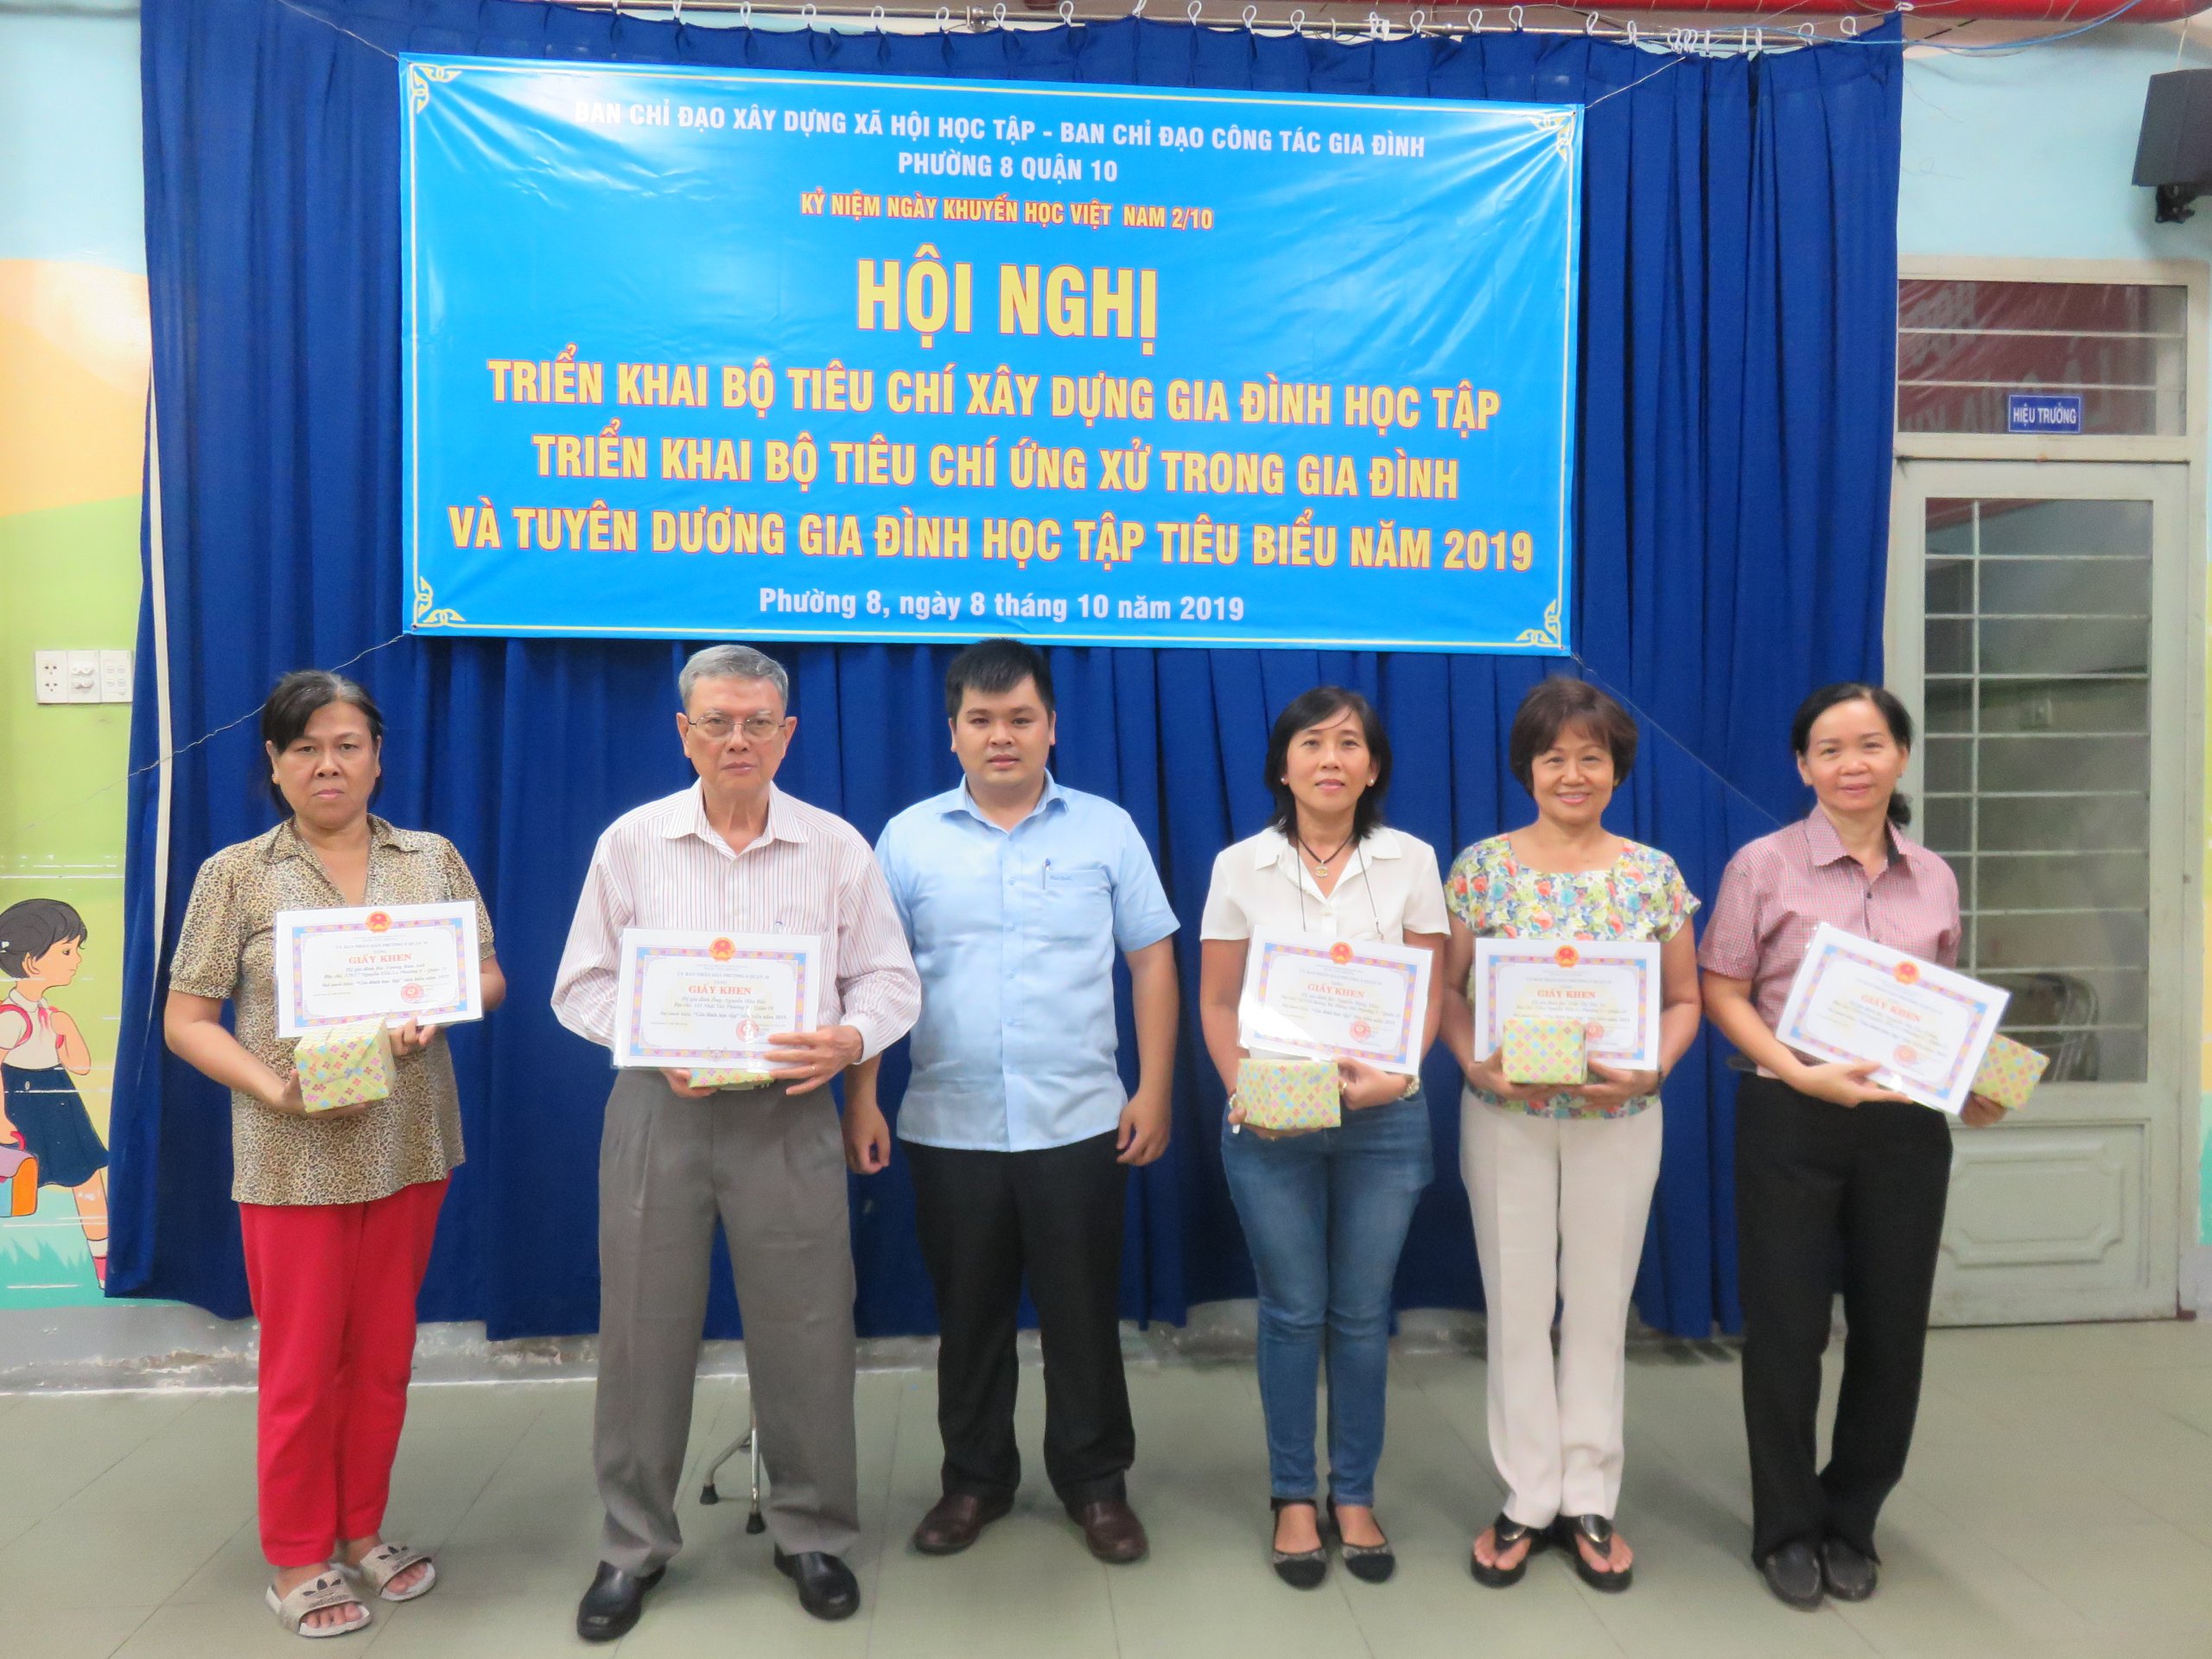 Image: PHƯỜNG 8: Tổ chức các hoạt động kỷ niệm ngày Khuyến học Việt Nam 2/10 và tuyên dương Gia đình học tập tiêu biểu năm 2019